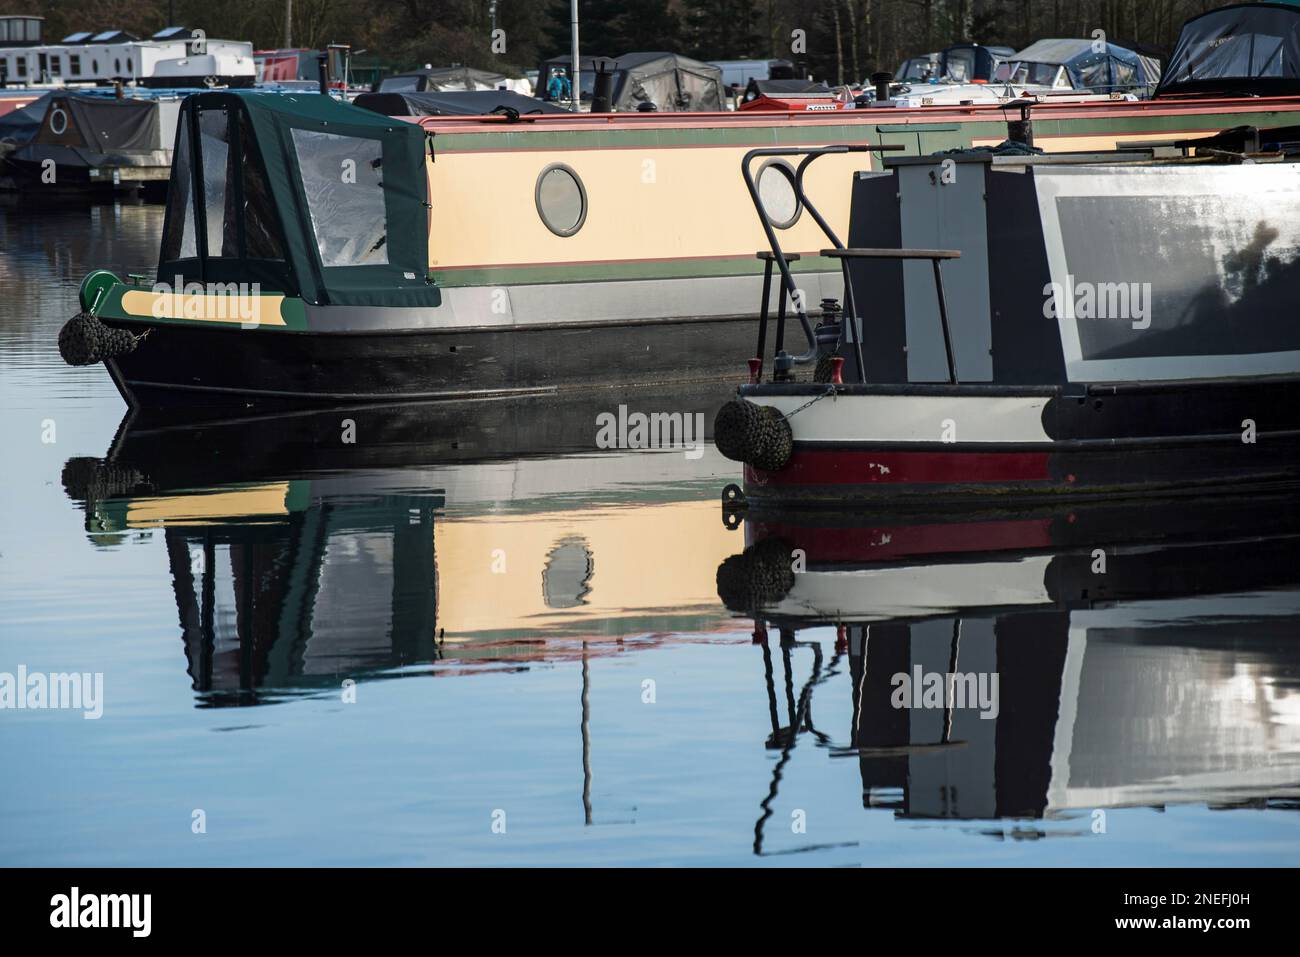 Canal narrowboats moored at Barton Marina, near Burton Upon Trent, East Staffordshire, England. Stock Photo